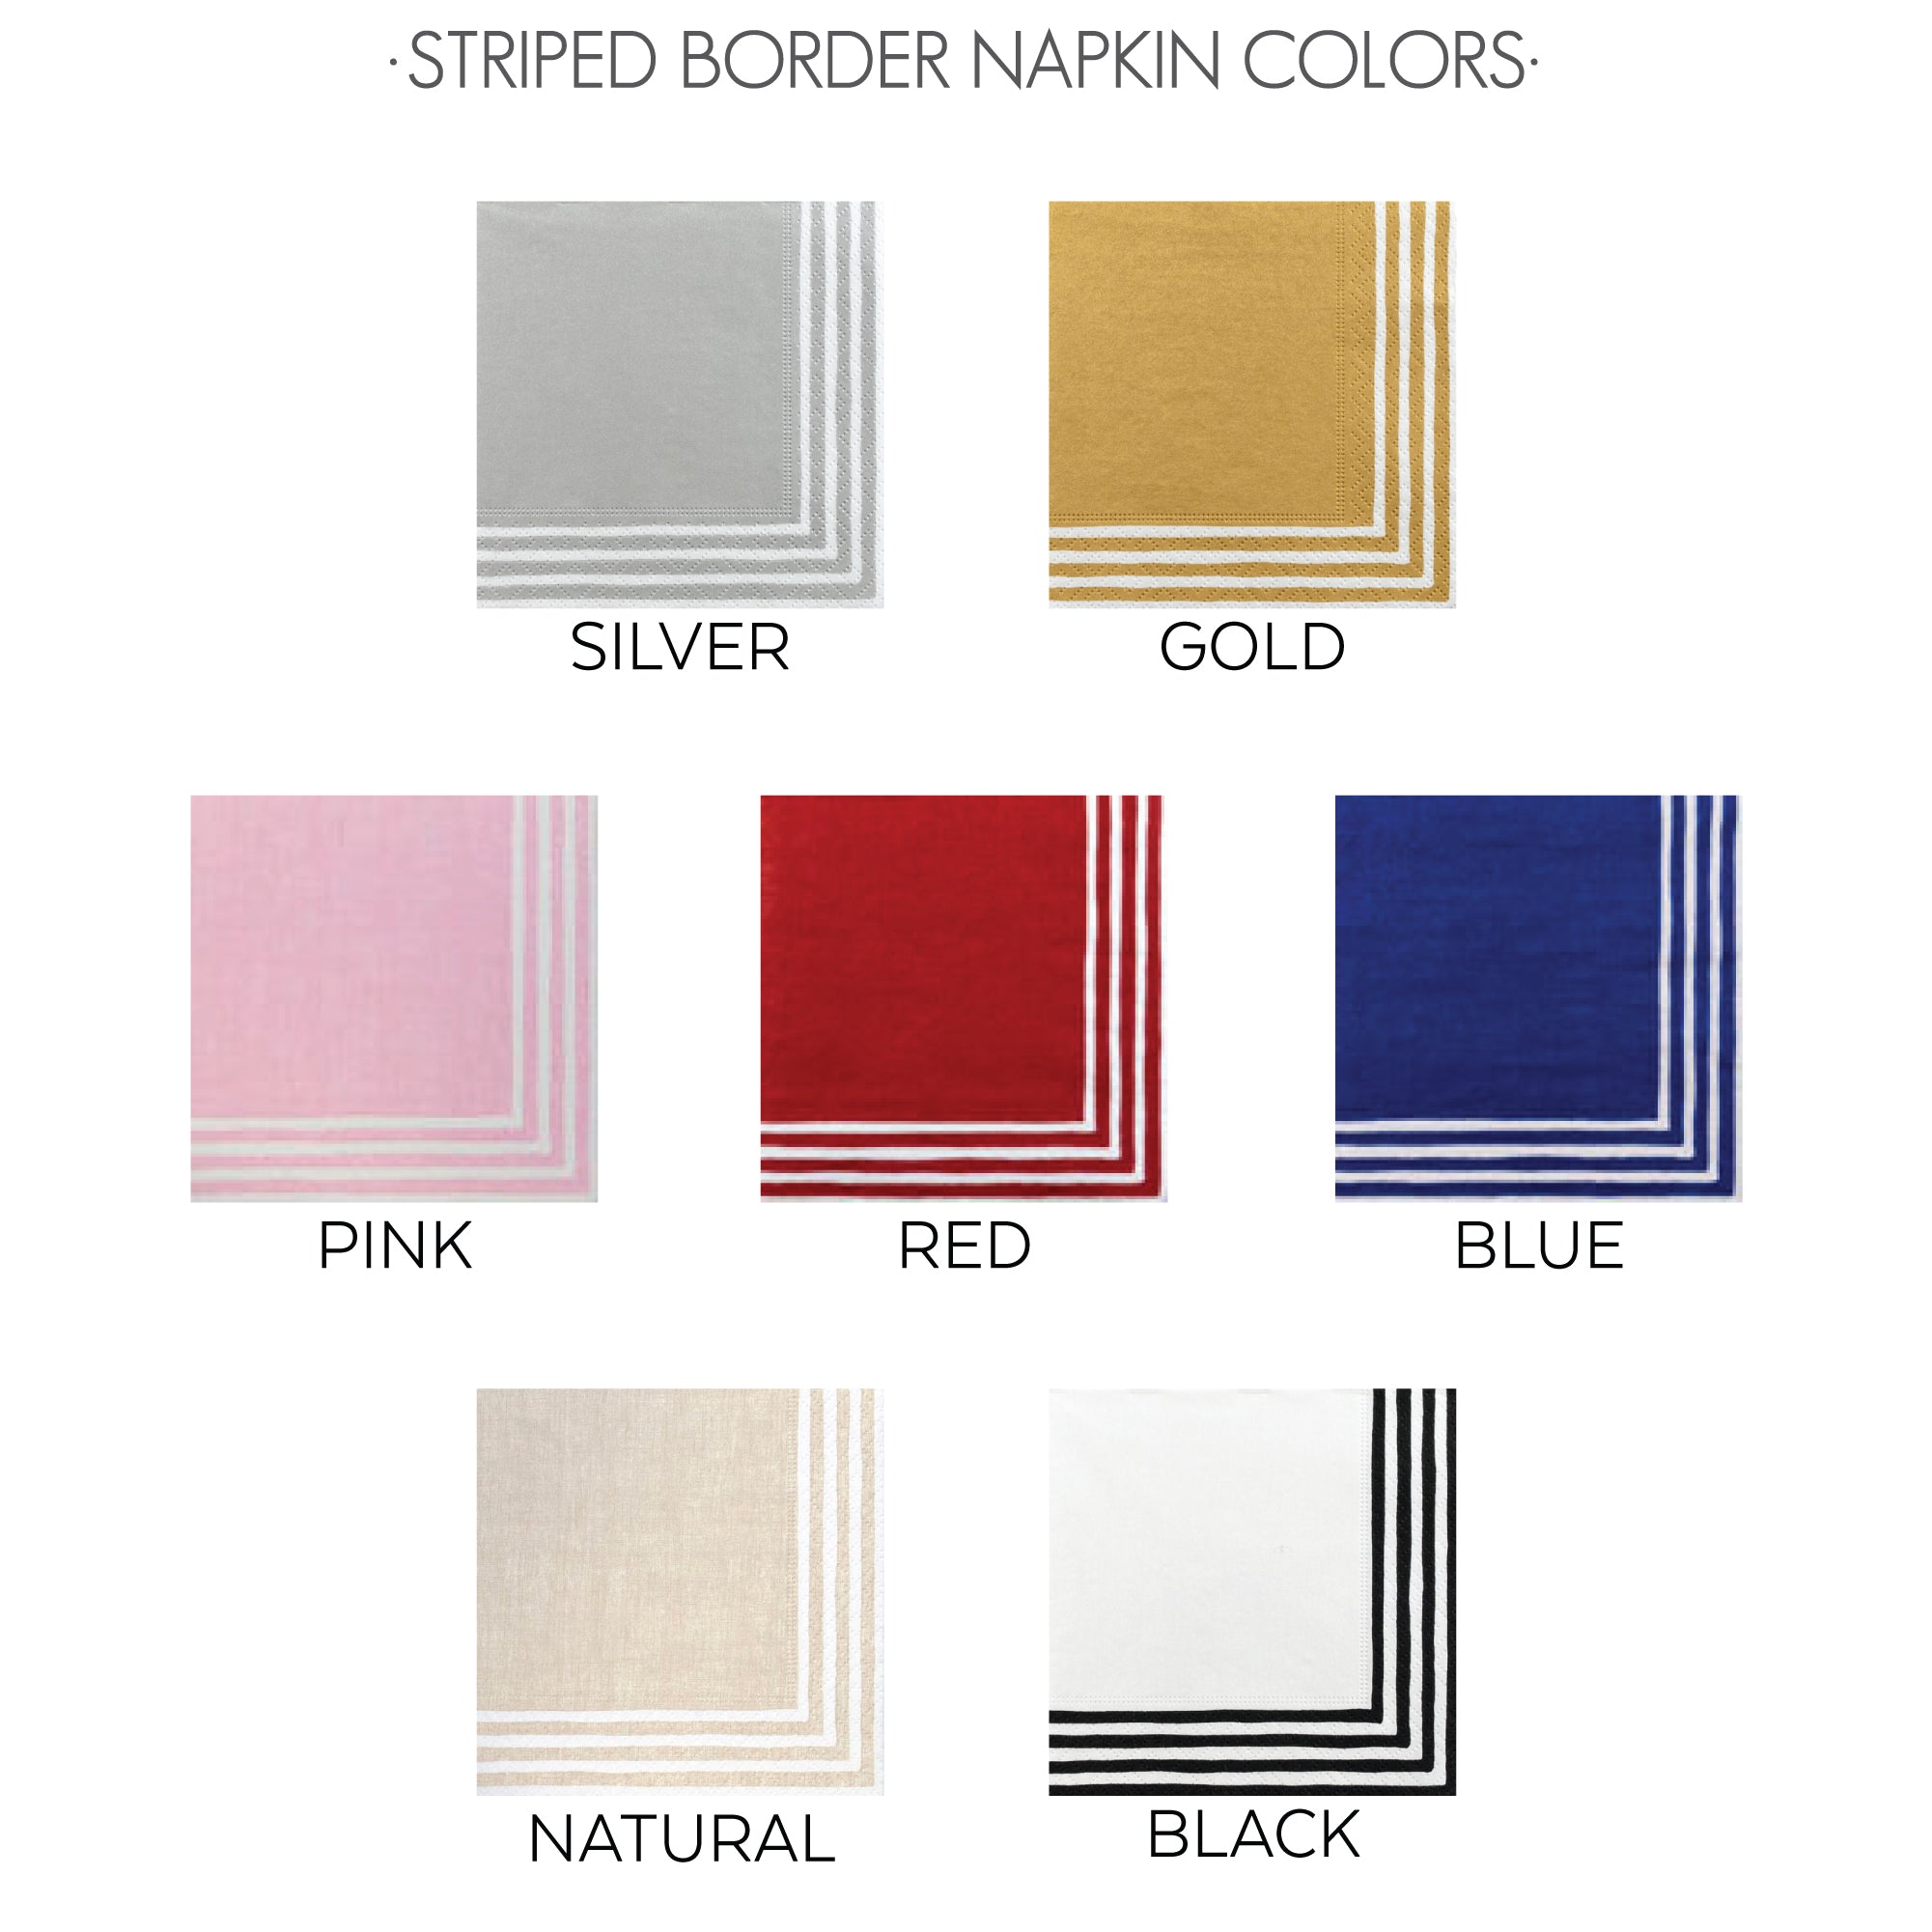 Striped Border Napkin Colors